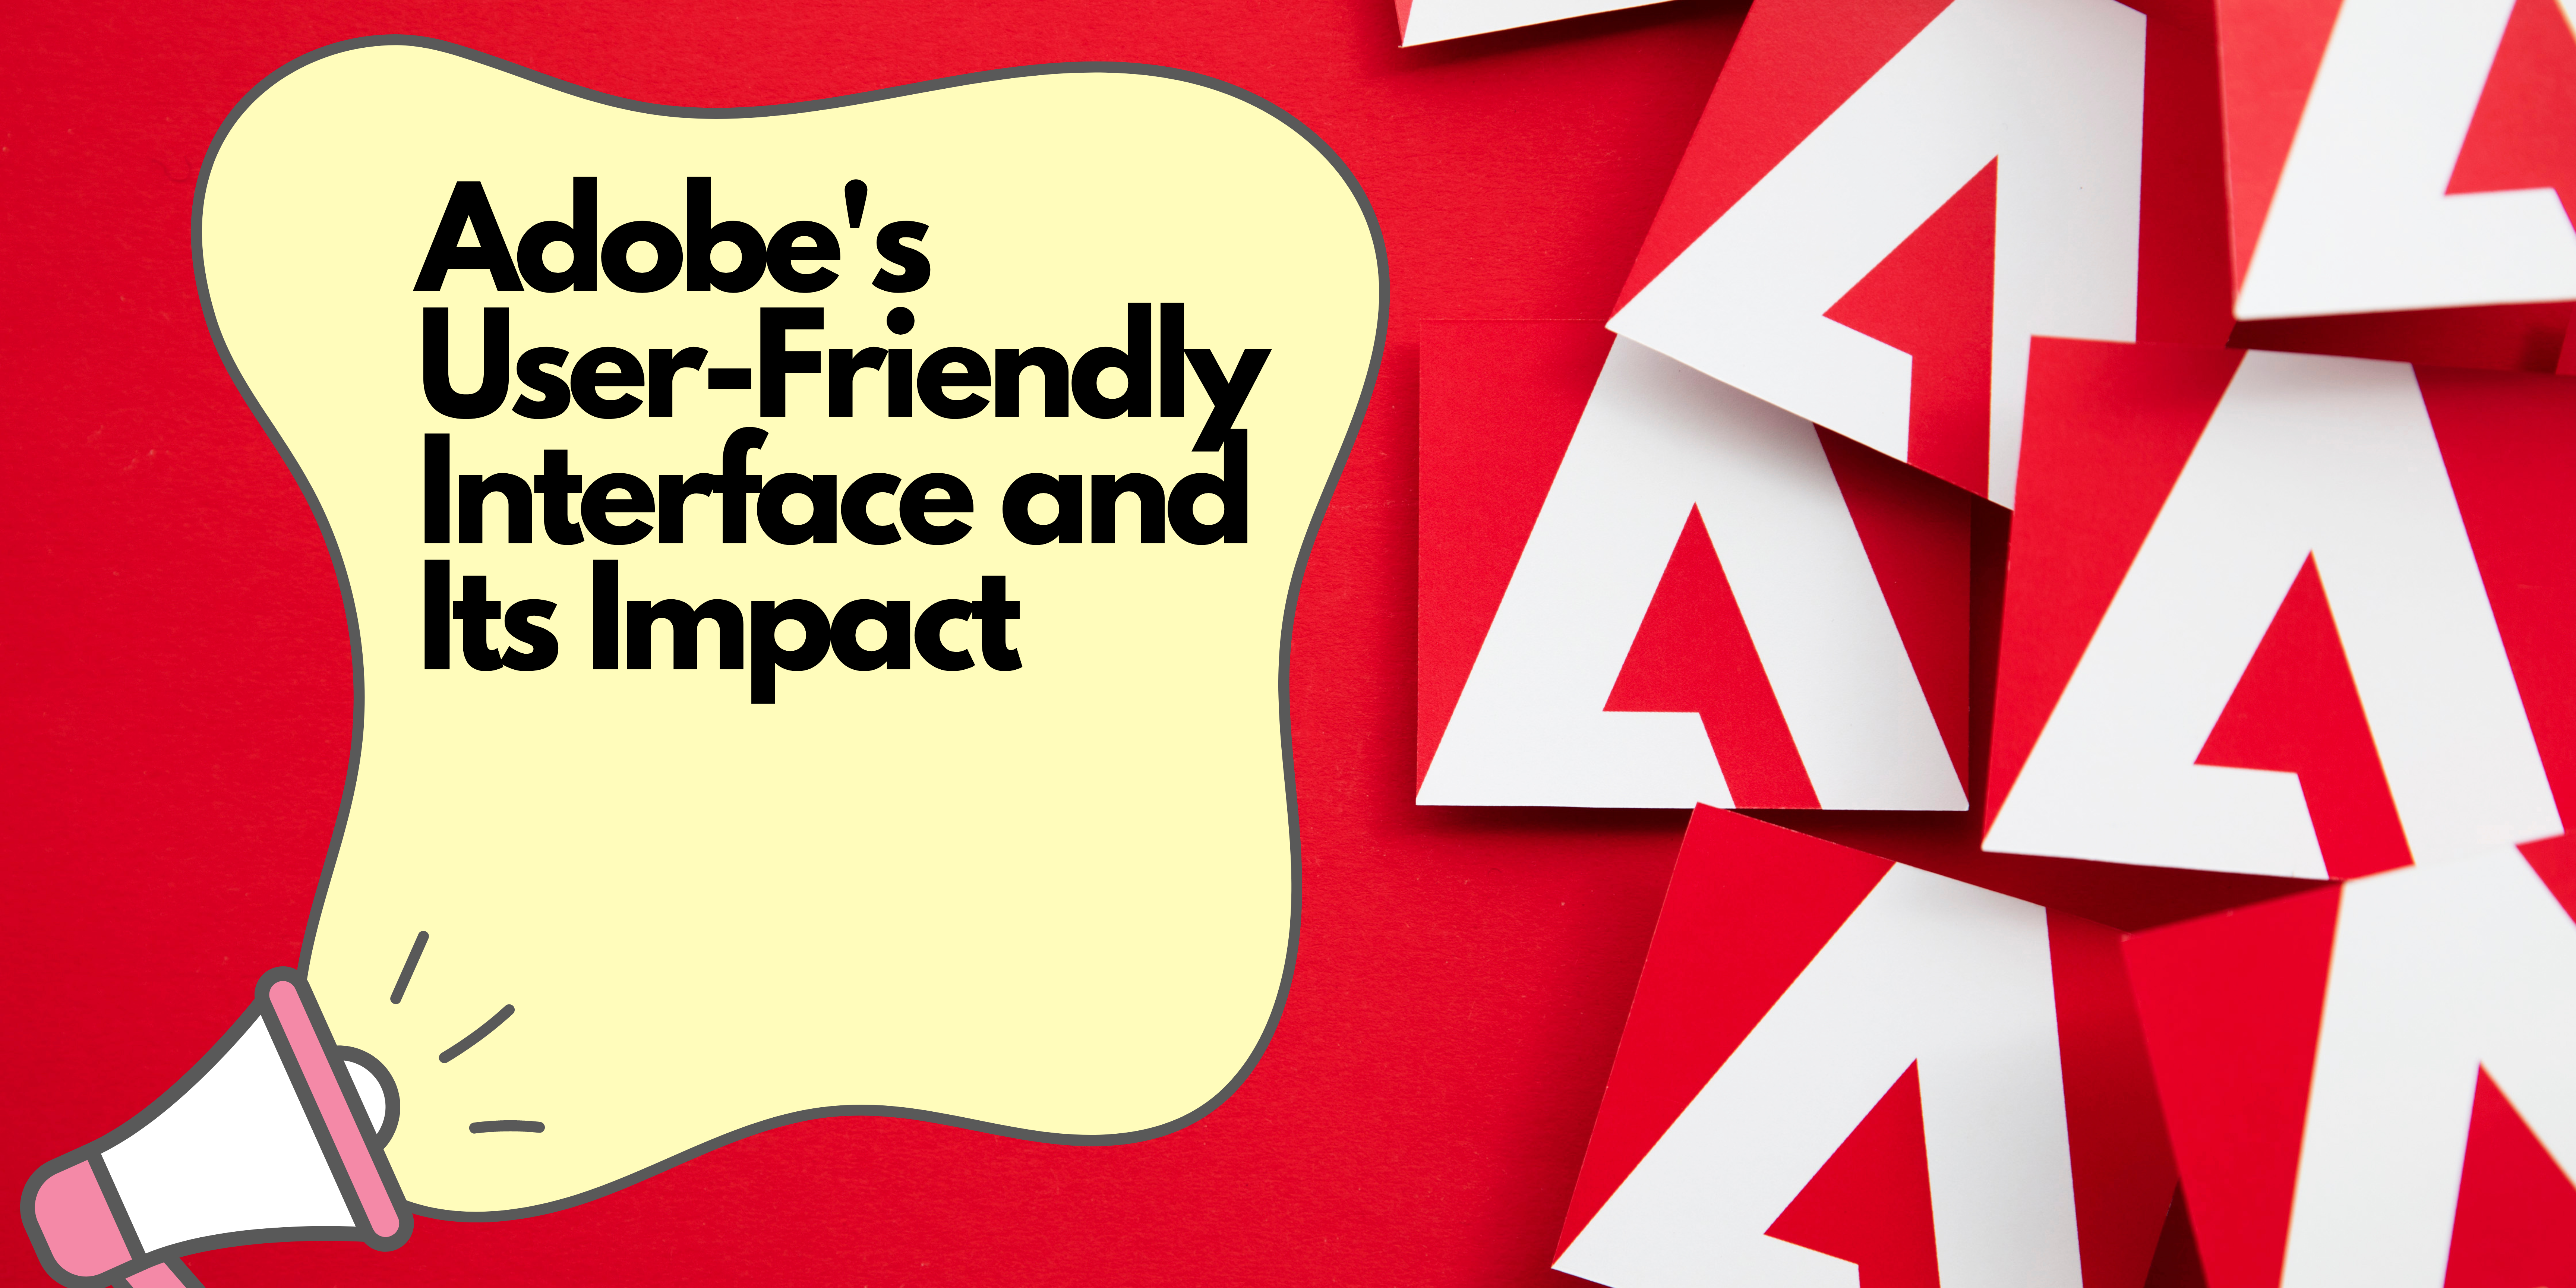 L'interfaccia user-friendly di Adobe e il suo impatto